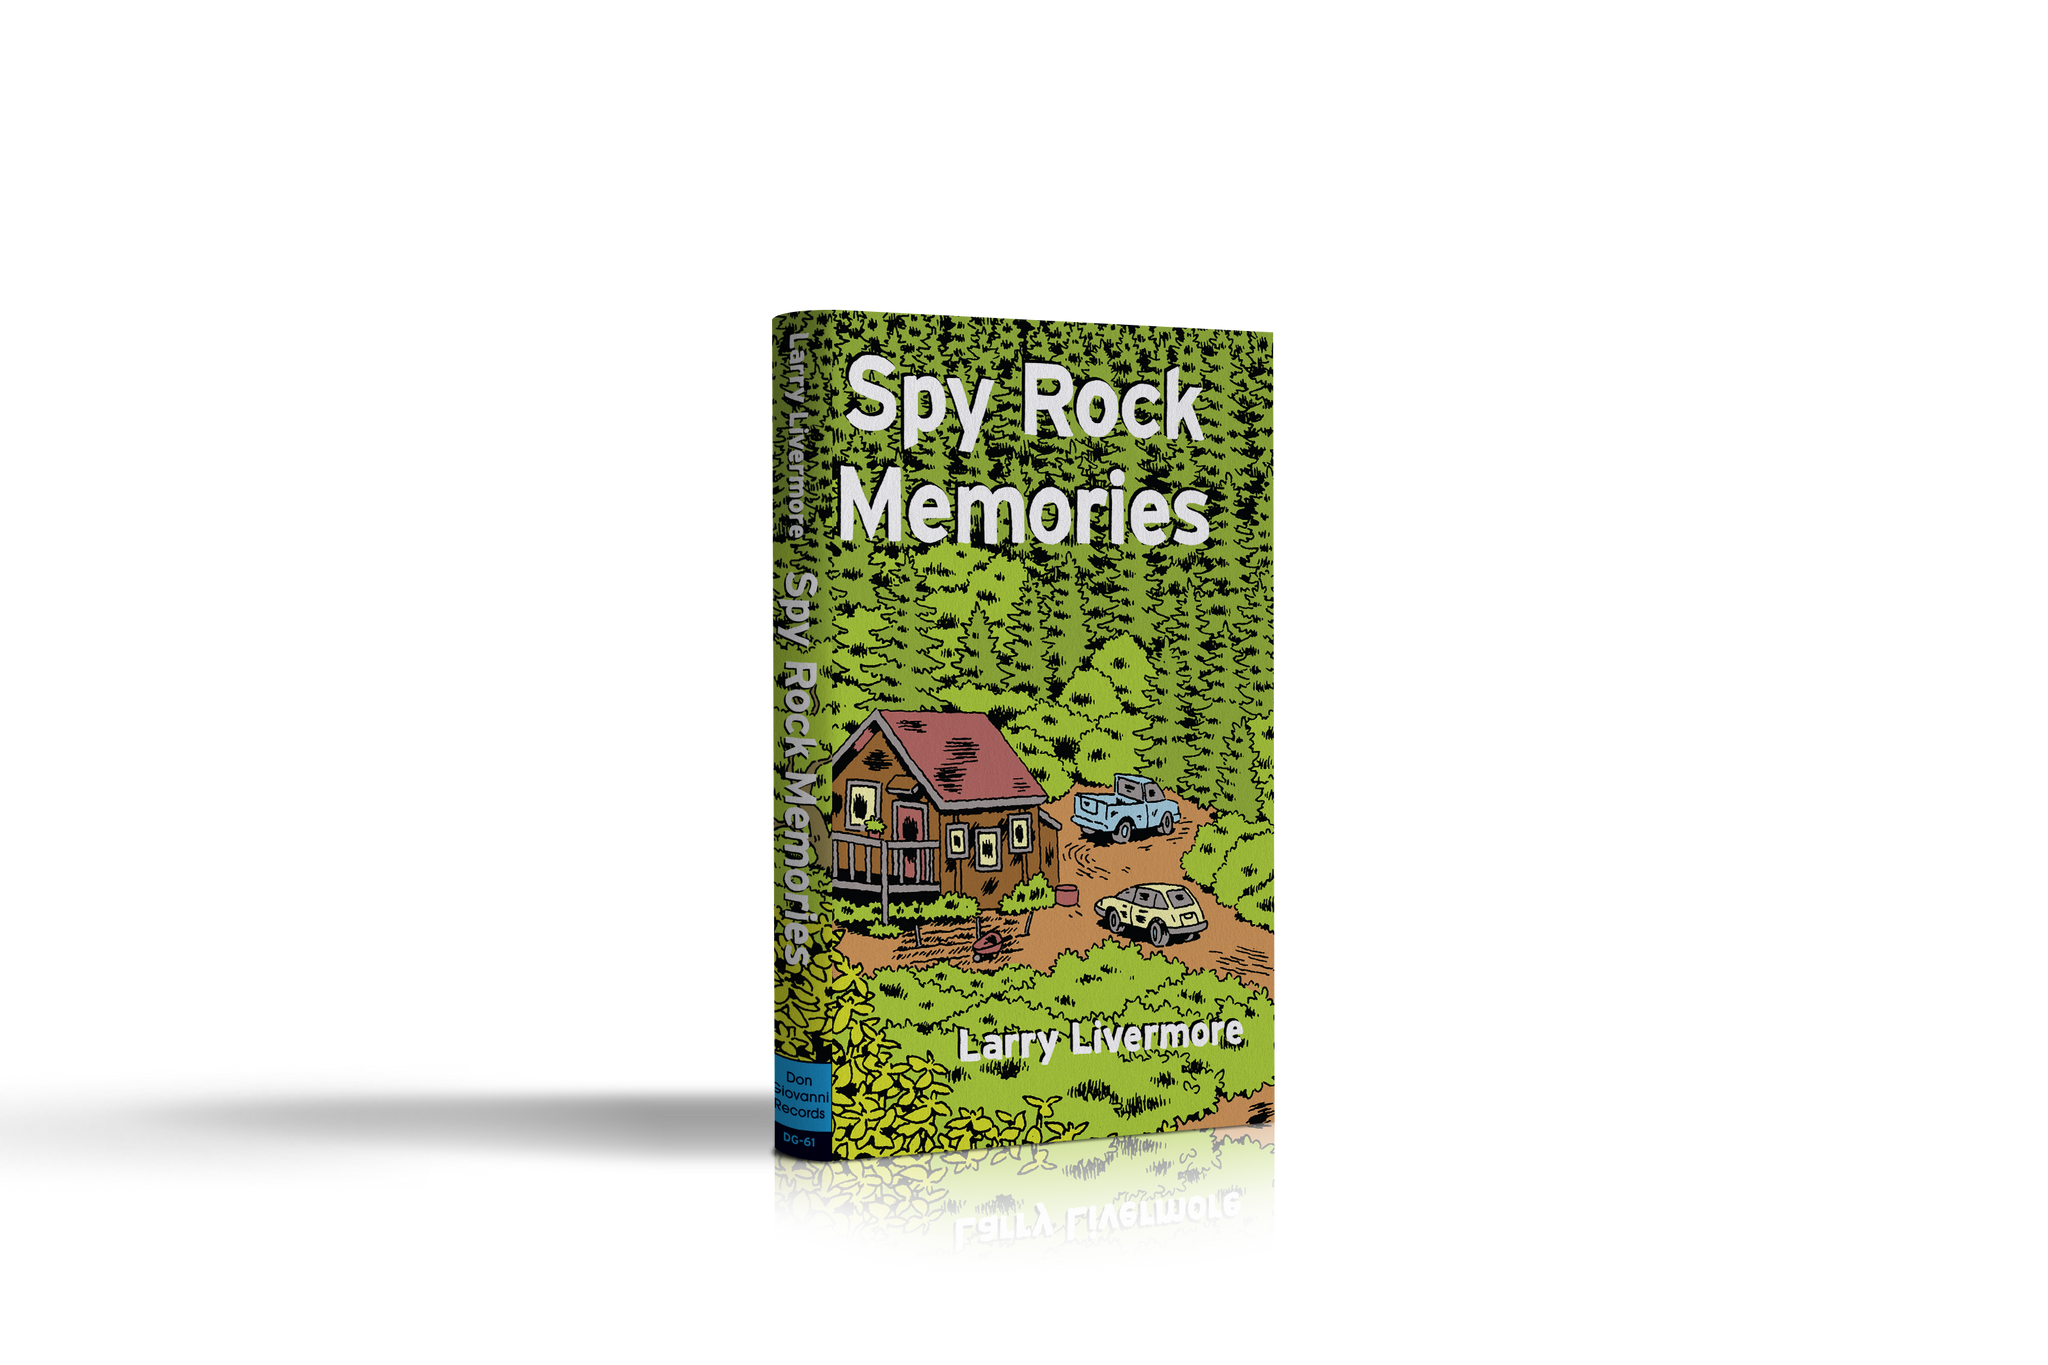 Larry Livermore "Spy Rock Memories"